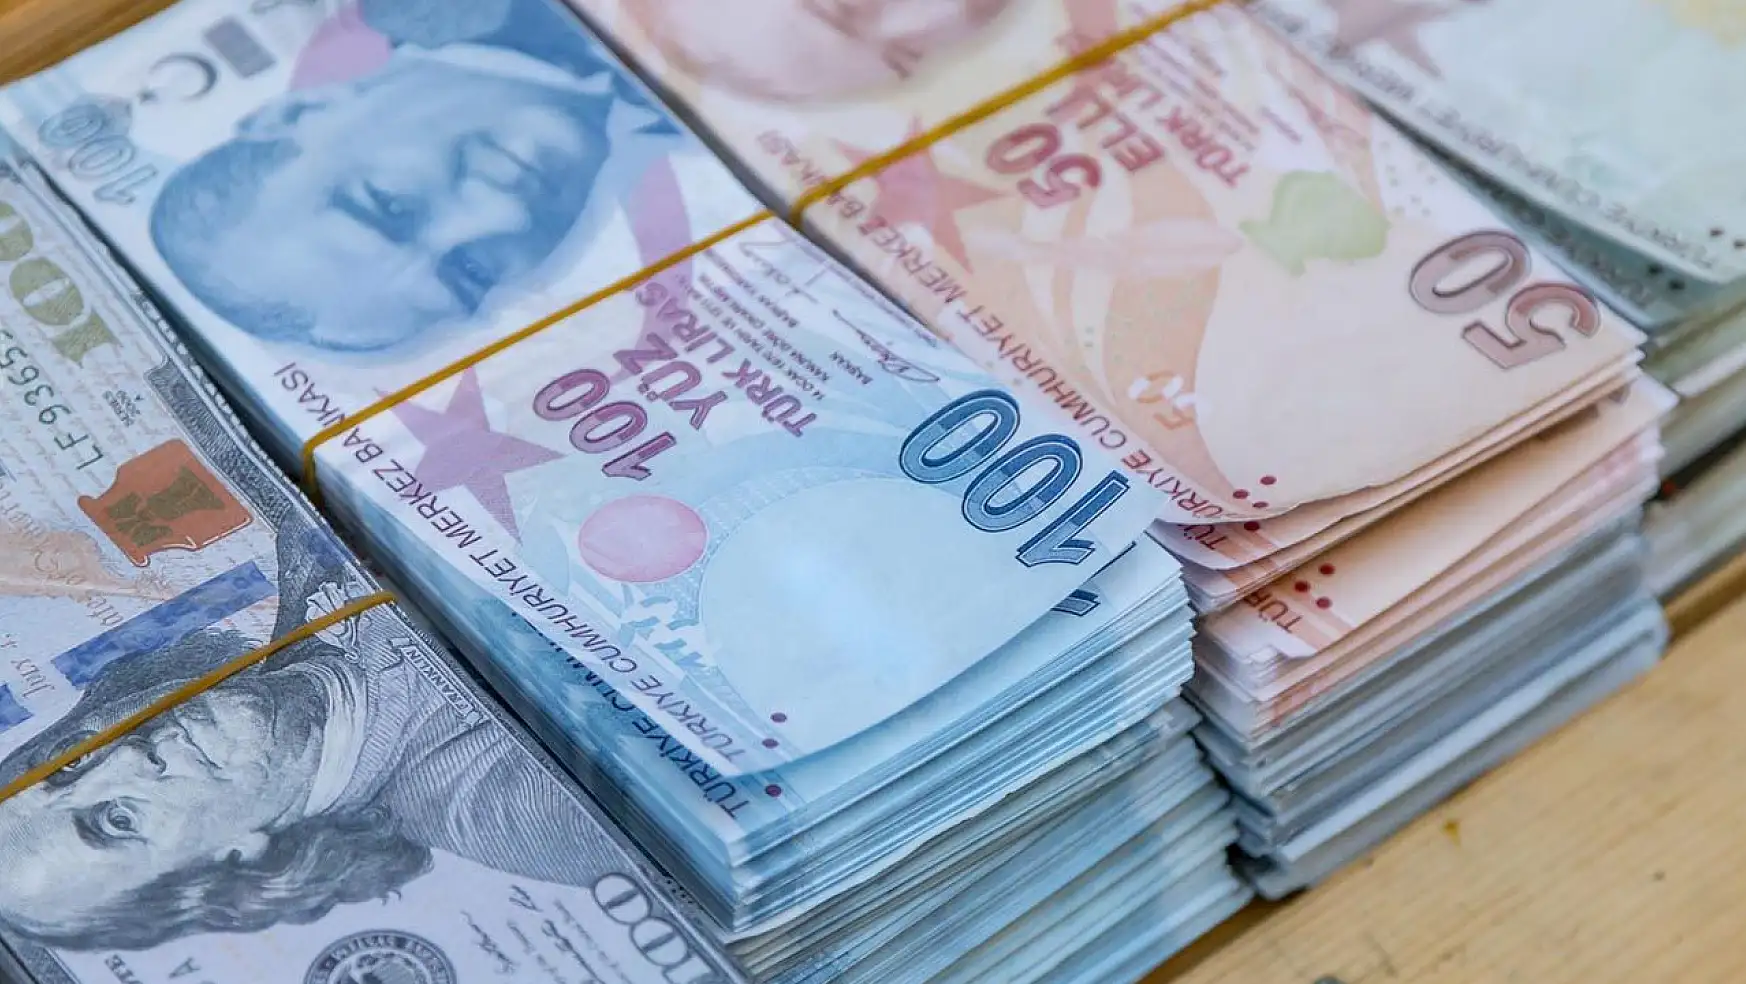 Ağustos ayına özel bankalardan yüksek faiz: 50 bin lira ile gidene şok rakam ödeyecekler